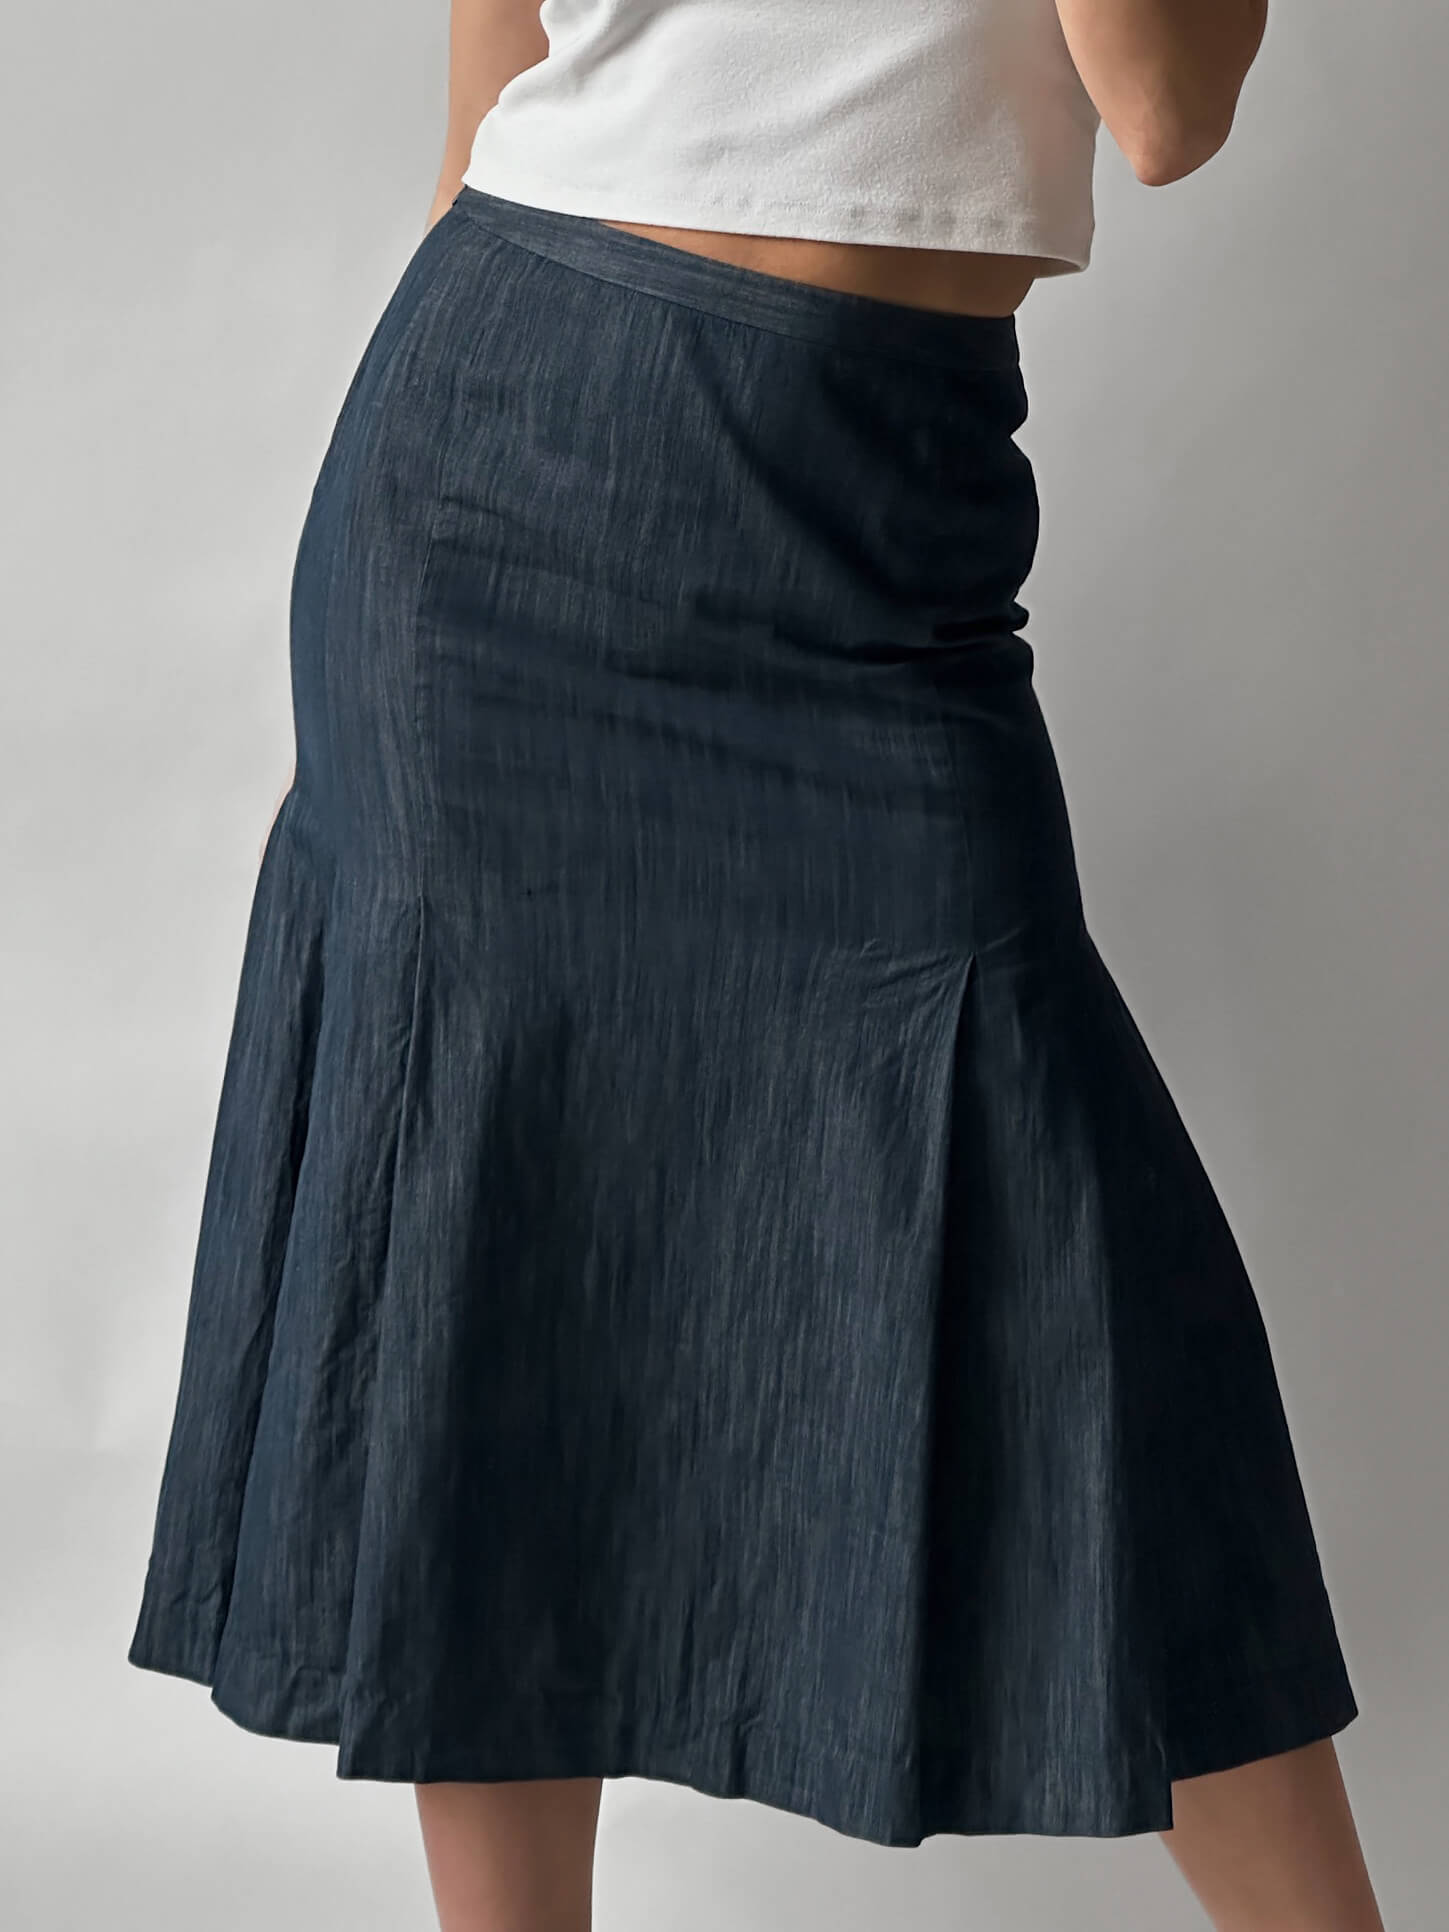 Vintage Italian Denim Pleated Skirt | S